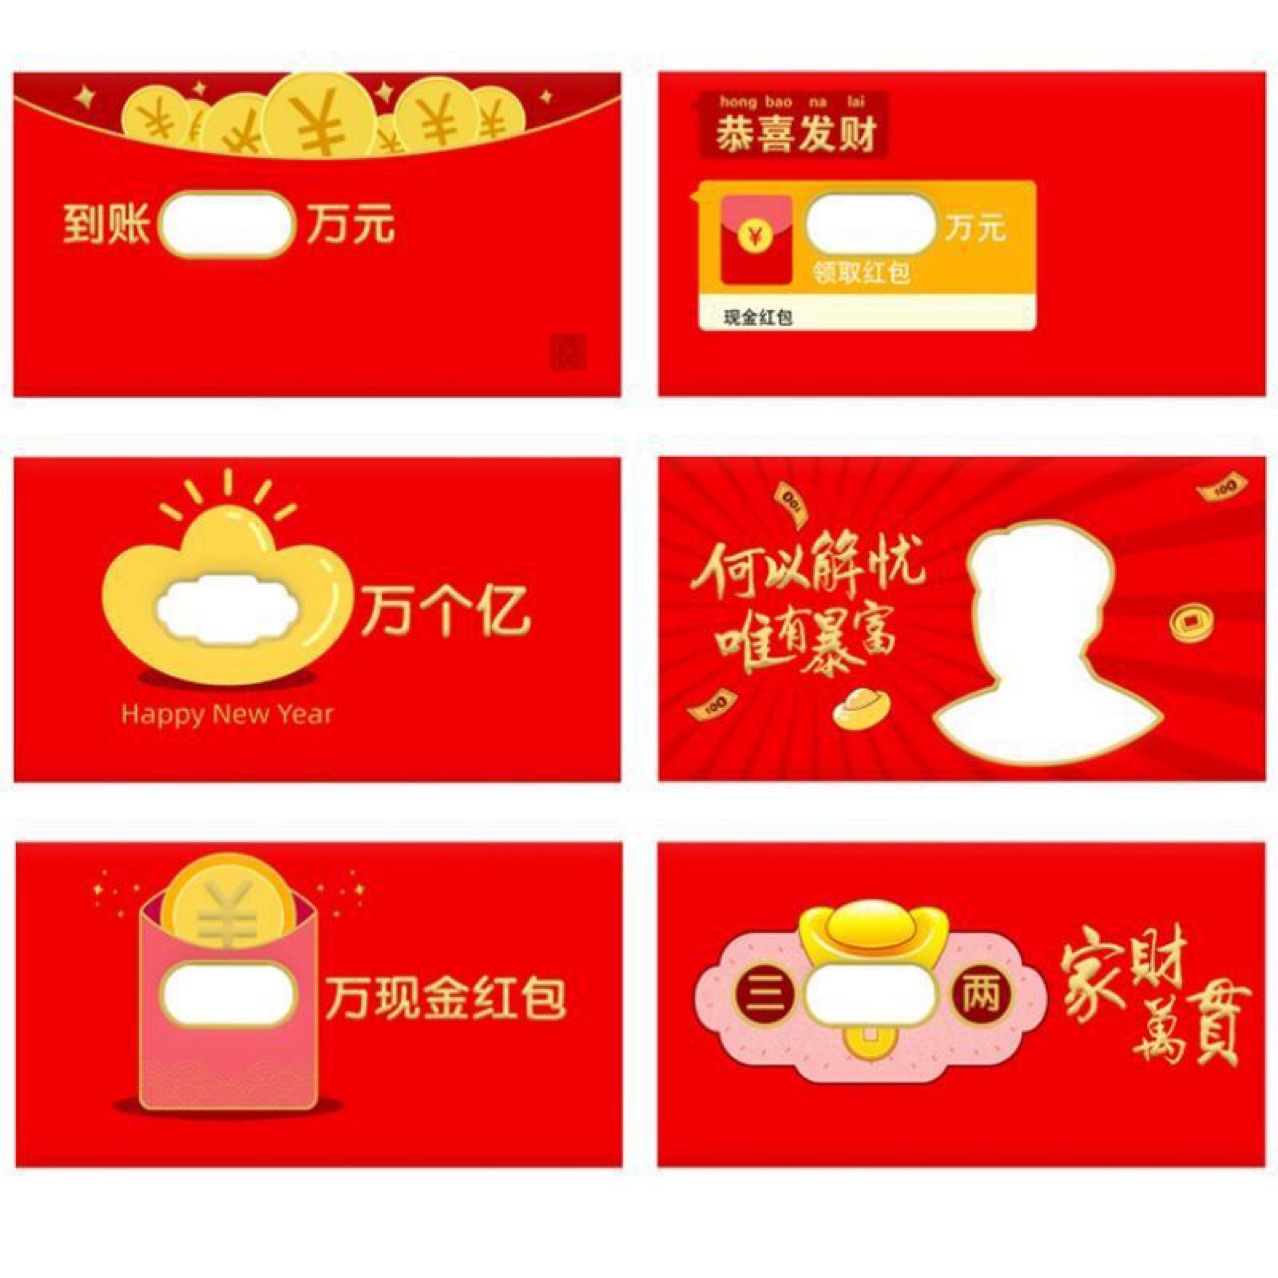 2021年新款紅包創意紅包燙金工藝婚禮喜慶春節娛樂紅包